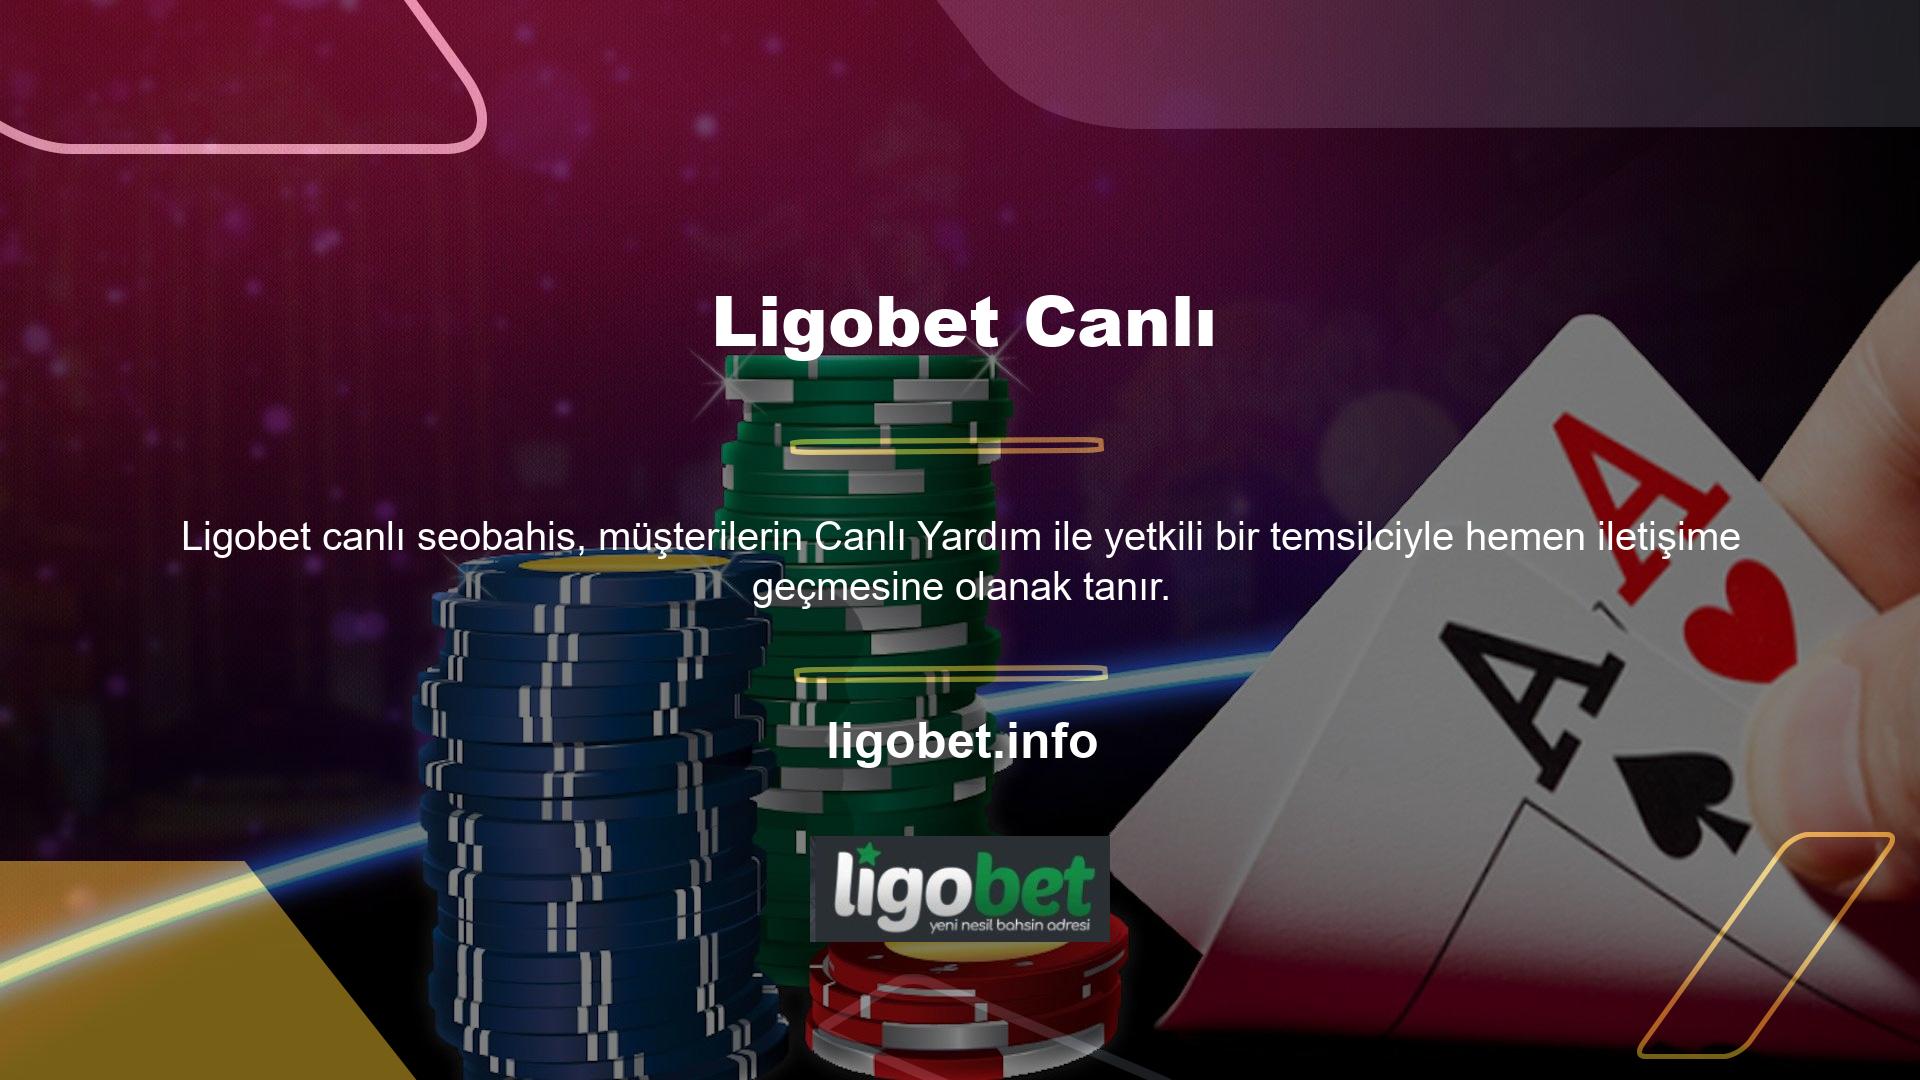 Ligobet, casino sektöründe uzun yıllardır en popüler bahis sitelerinden biri olmuştur